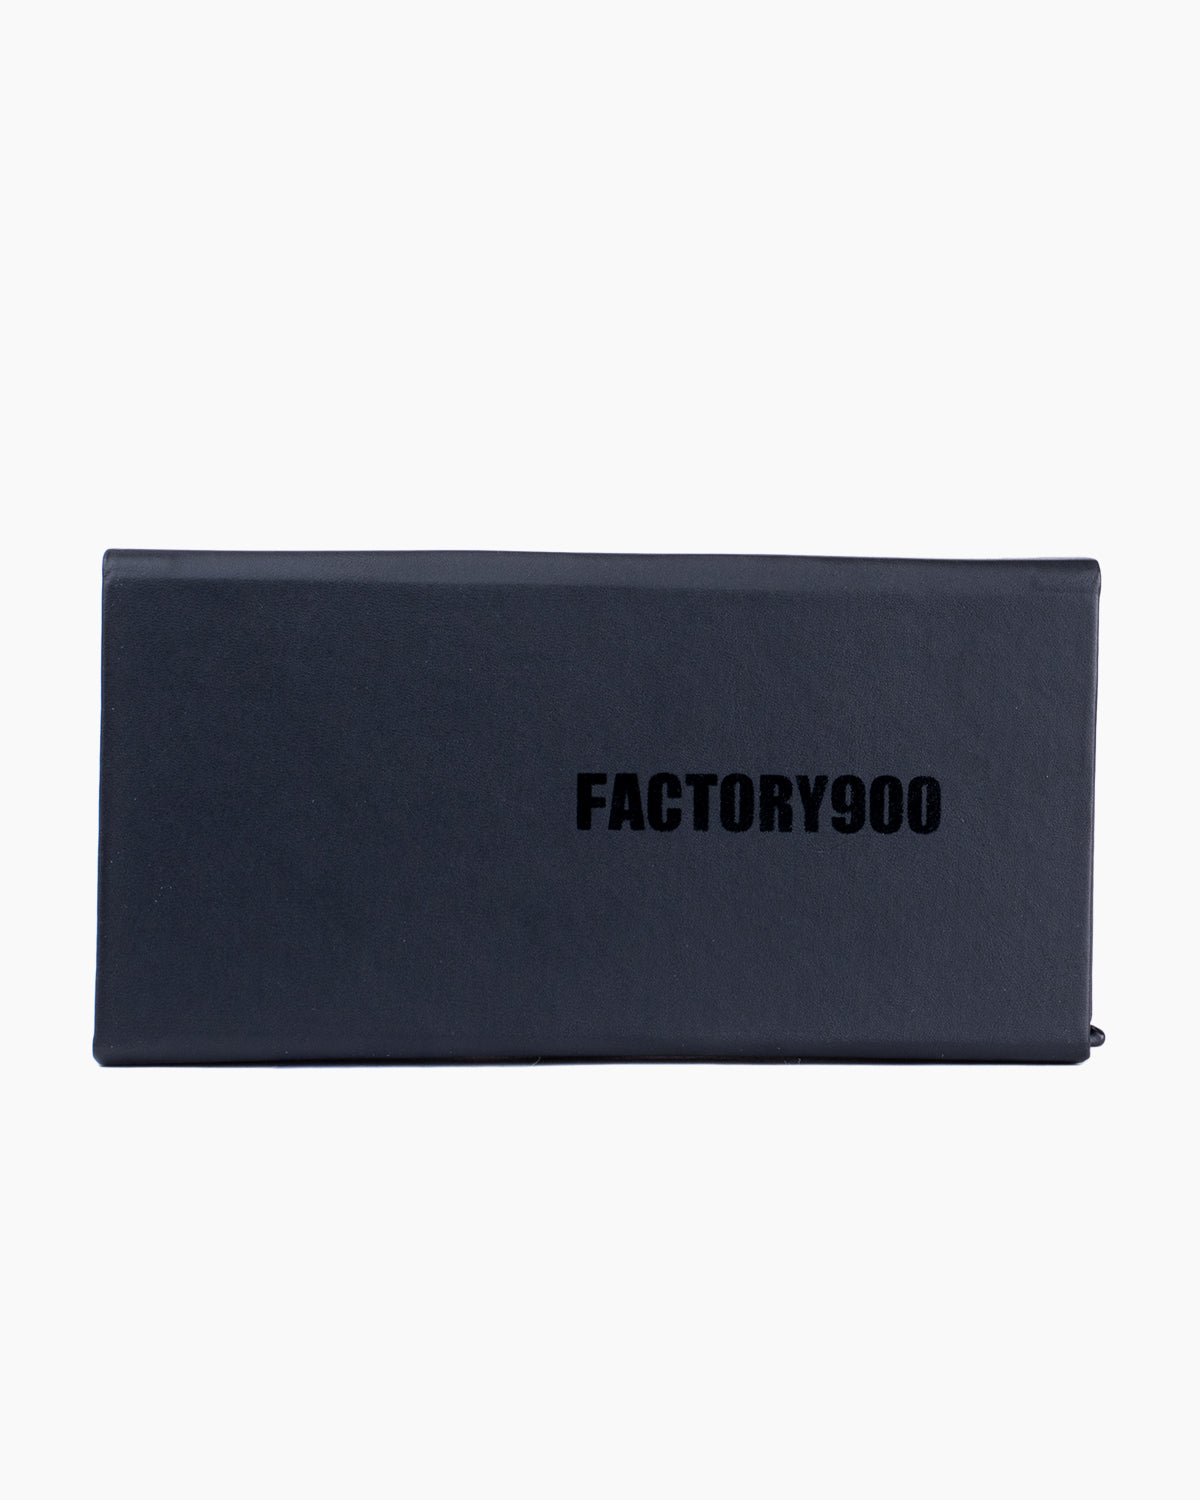 Factory 900 - MF001 - 03 | Bar à lunettes